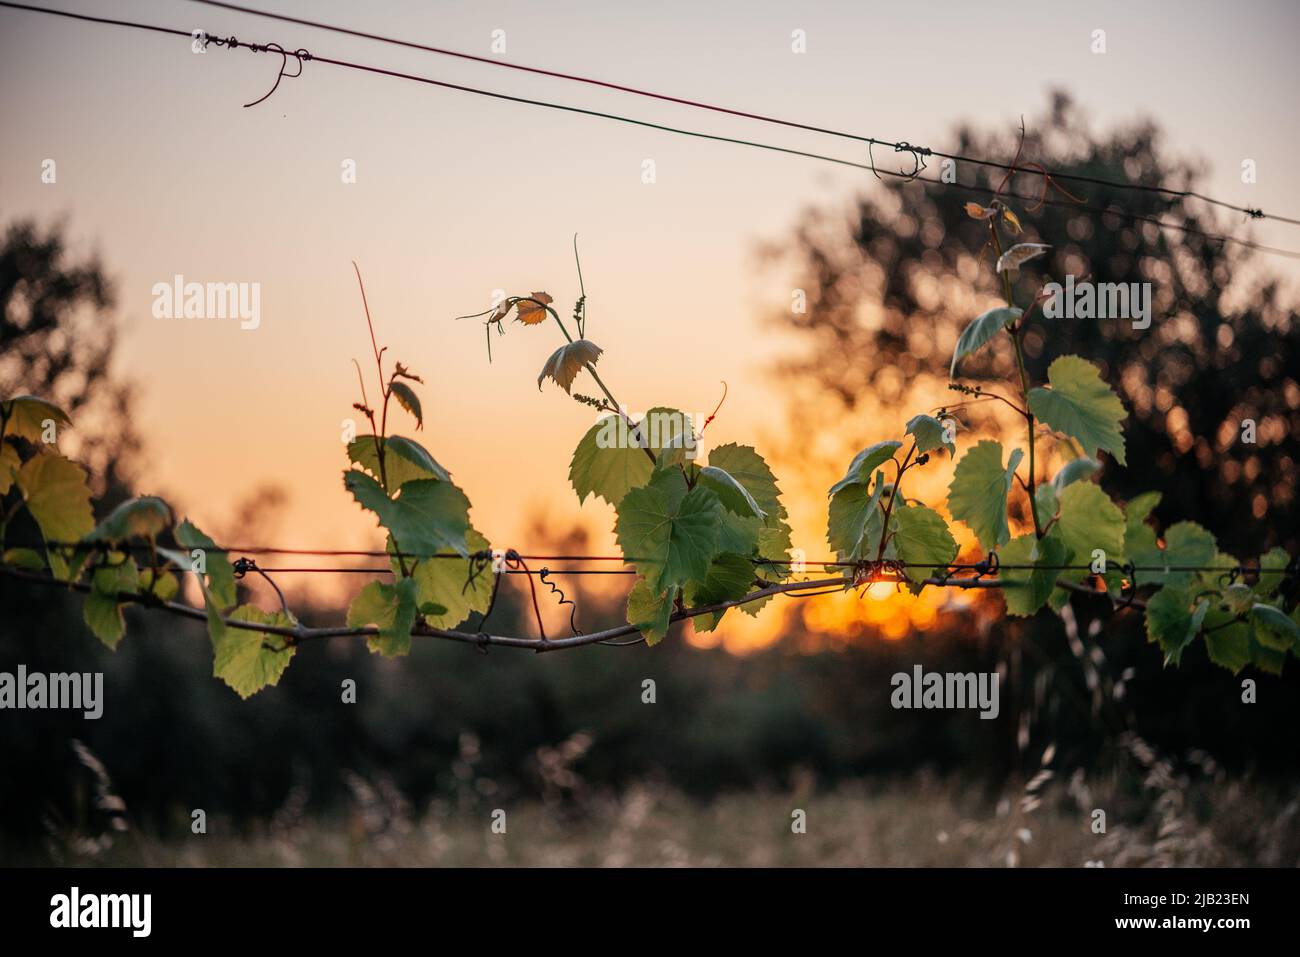 Junge grüne, zarte Weintraubenblätter mit Sonnenuntergang am Himmel im Hintergrund Stockfoto